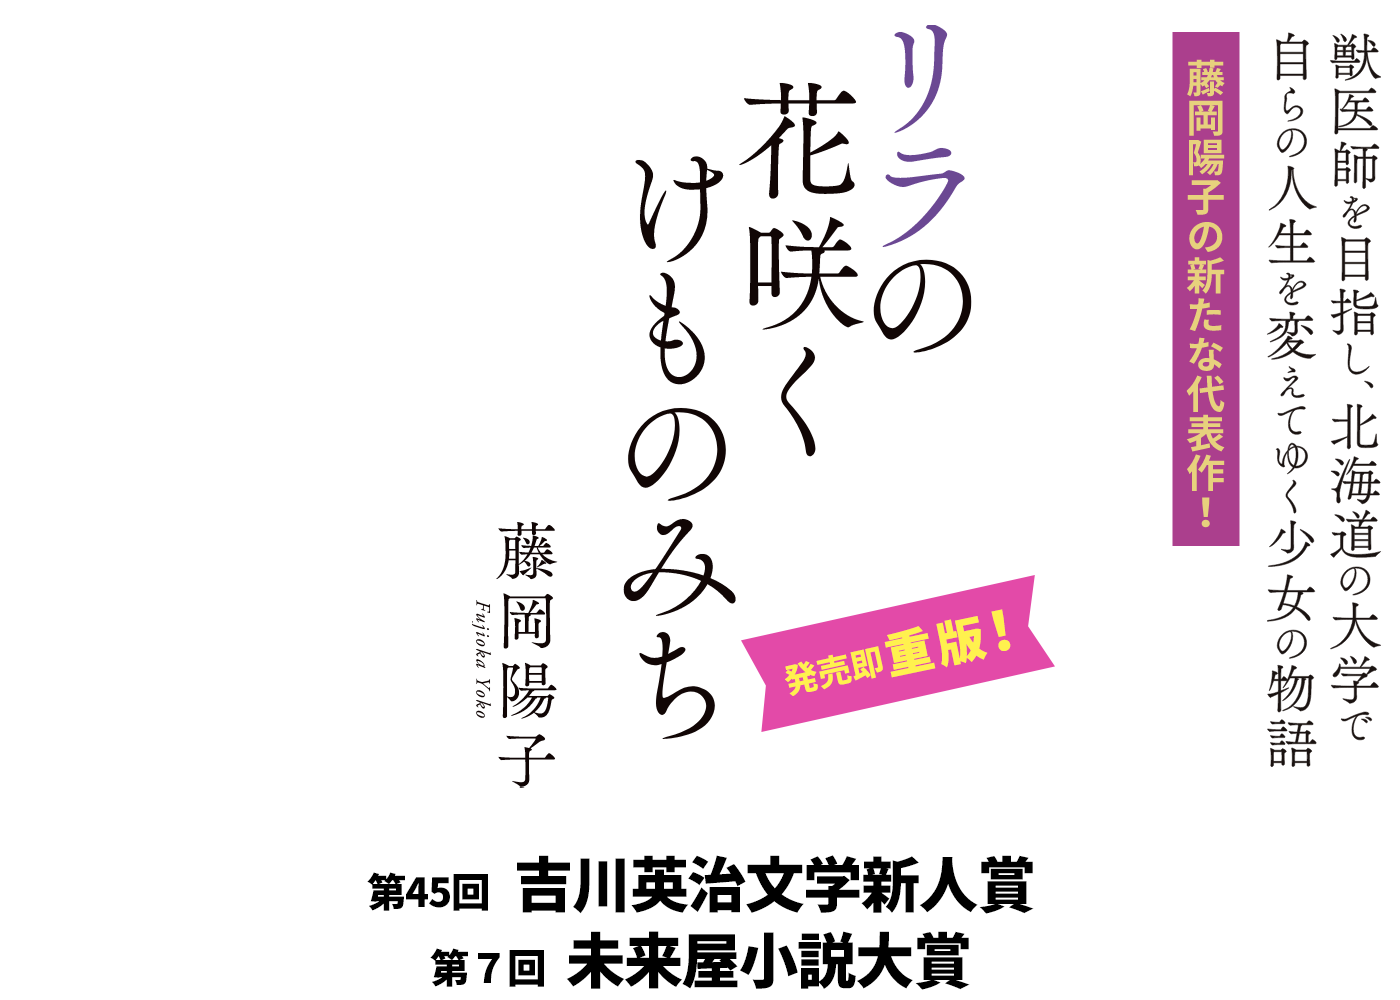 藤岡陽子著『リラの花咲くけものみち』獣医師を目指し、北海道の大学で自らの人生を変えてゆく少女の物語 藤岡陽子の新たな代表作！